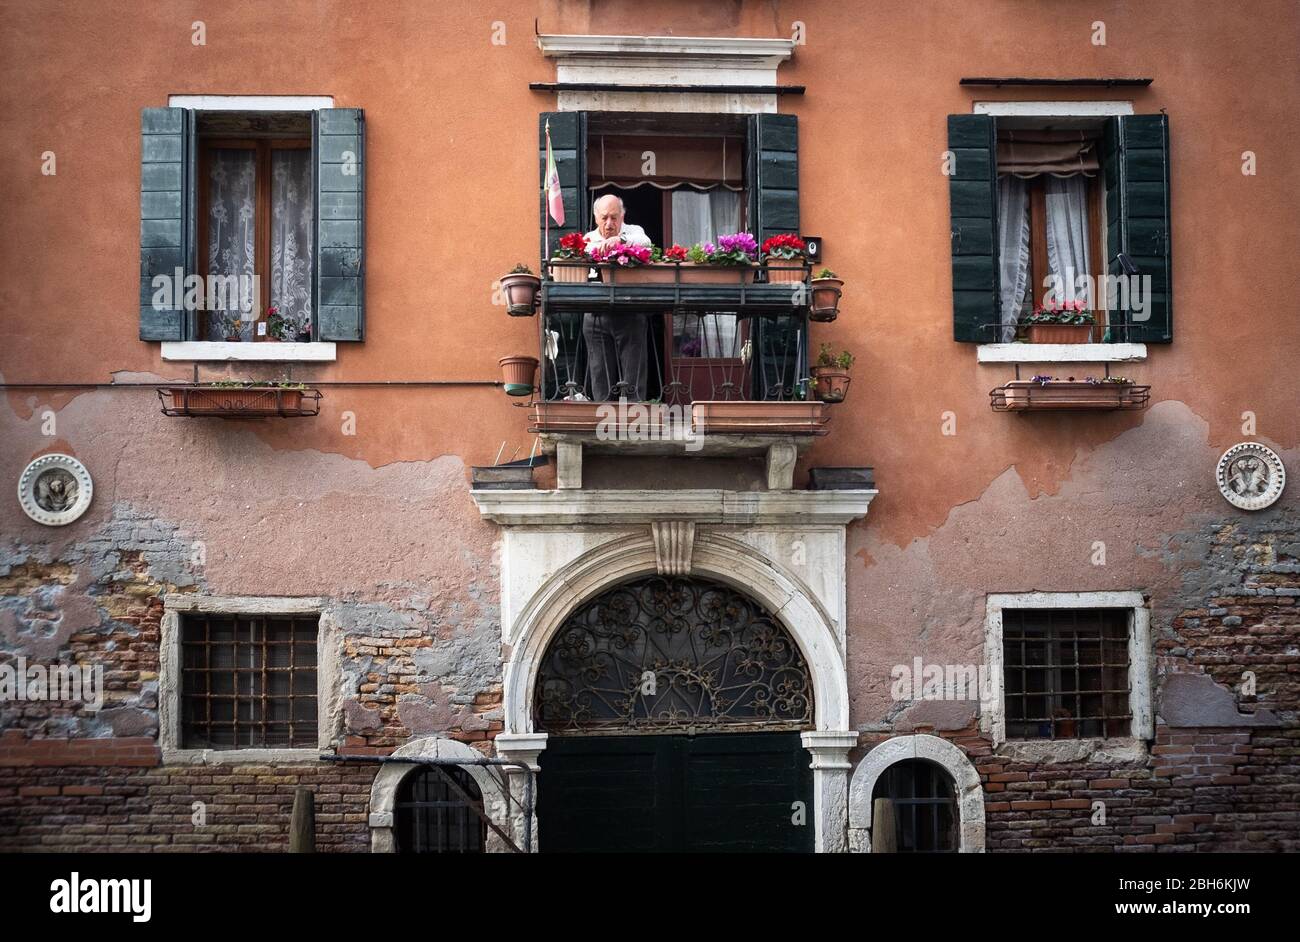 VENEZIA, ITALIA - APRILE 2020: Un uomo si prende cura dei suoi fiori durante il periodo di chiusura nazionale per la pandemia Covid-19. Foto Stock